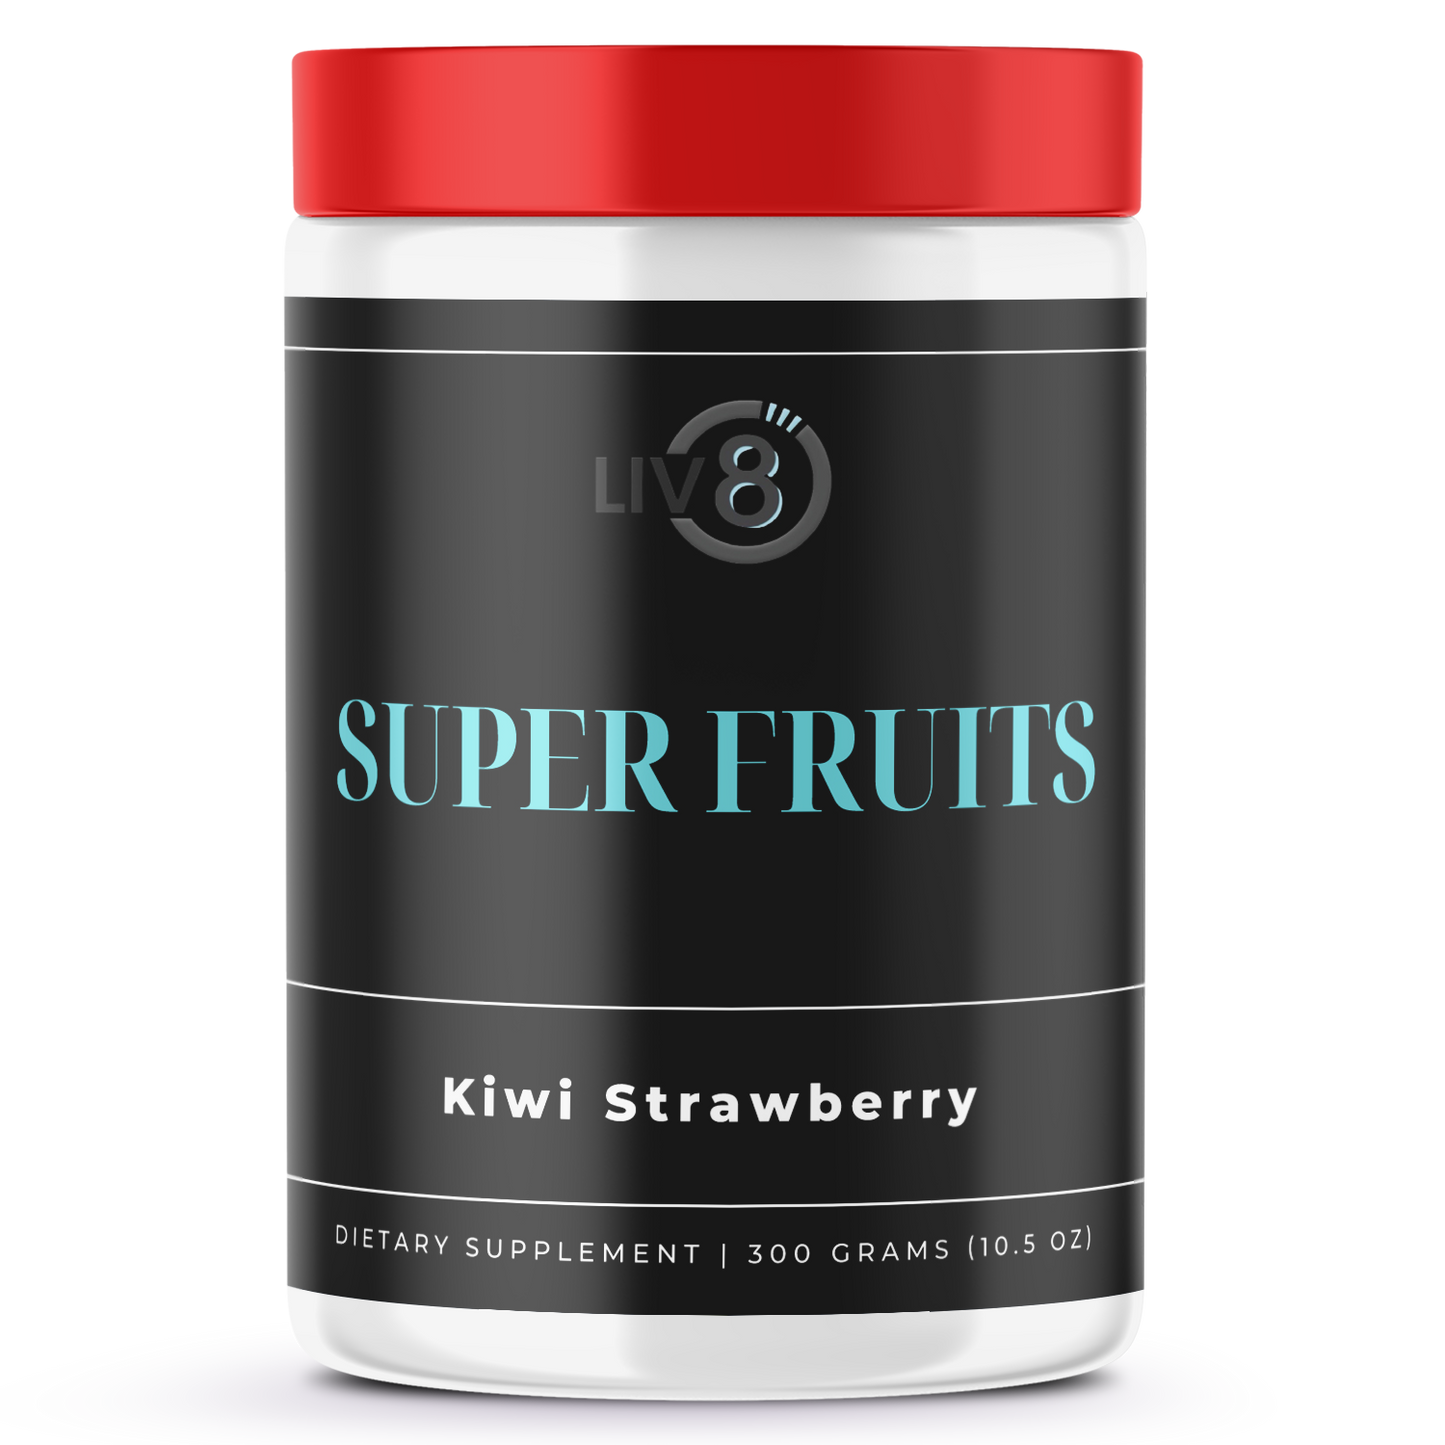 SUPER FRUITS